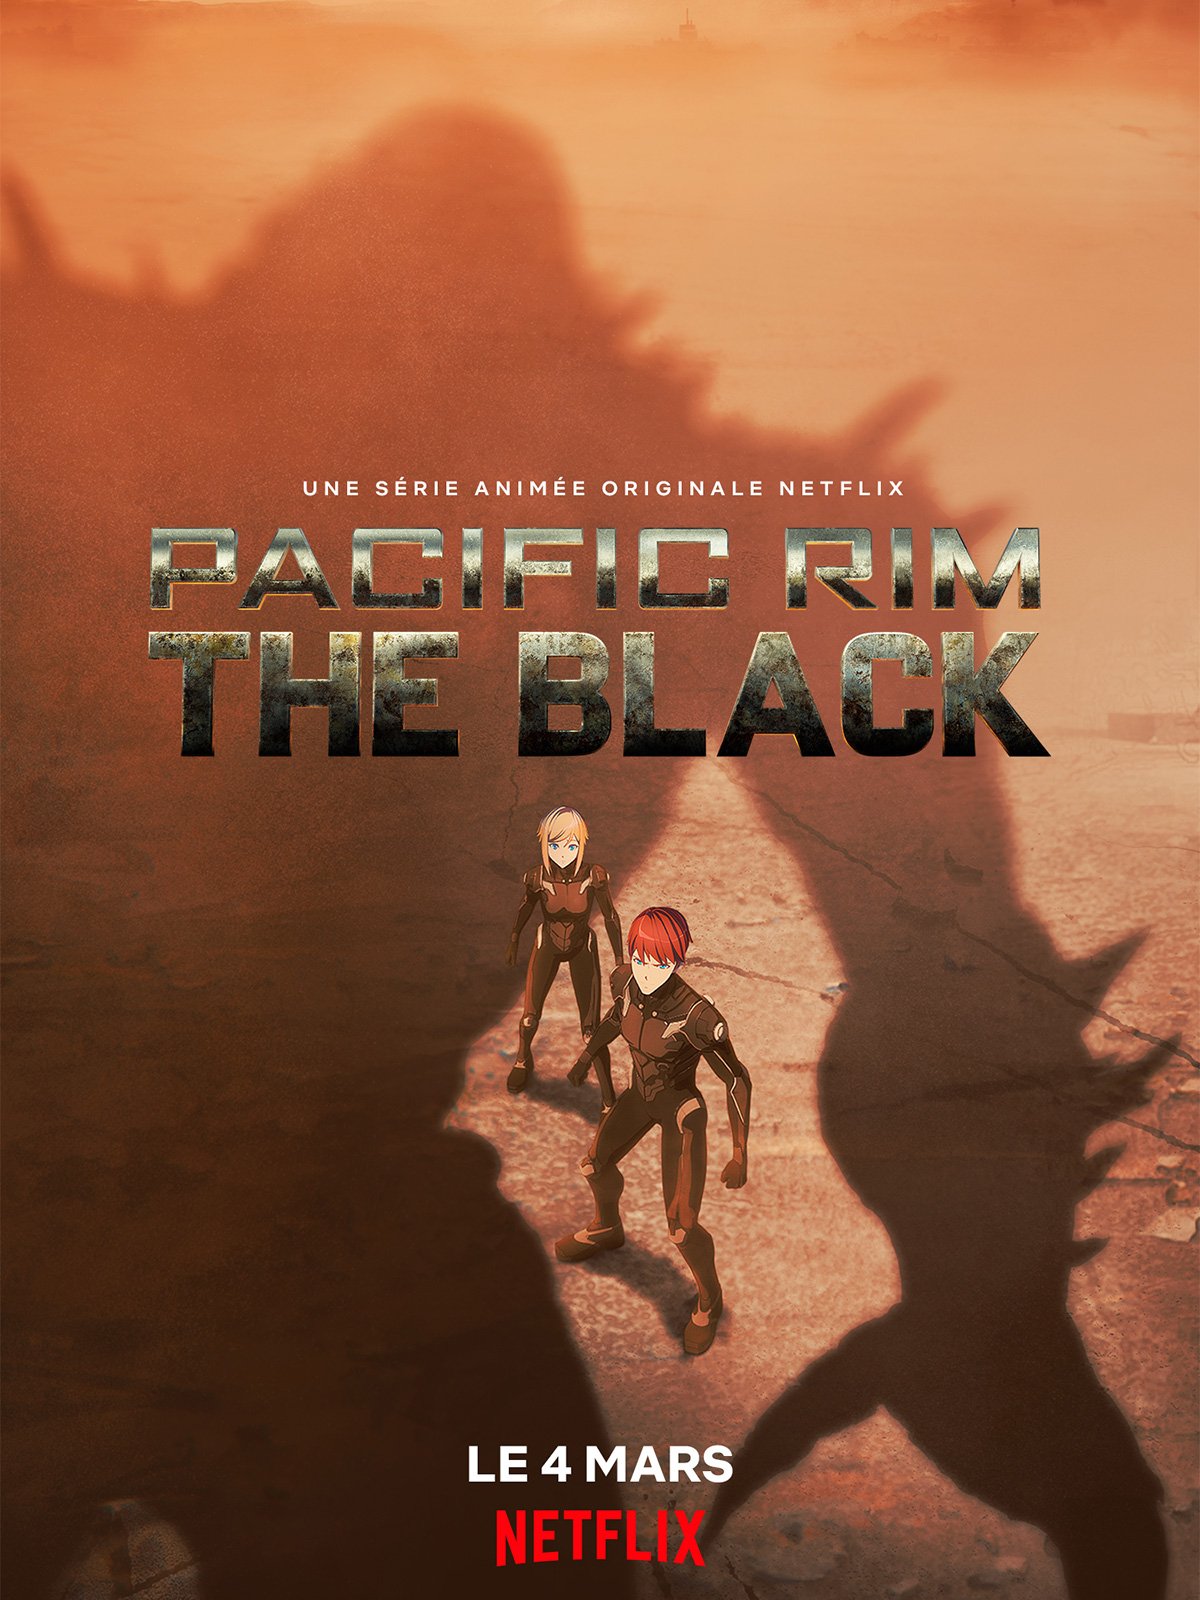 44 - Pacific Rim: The Black